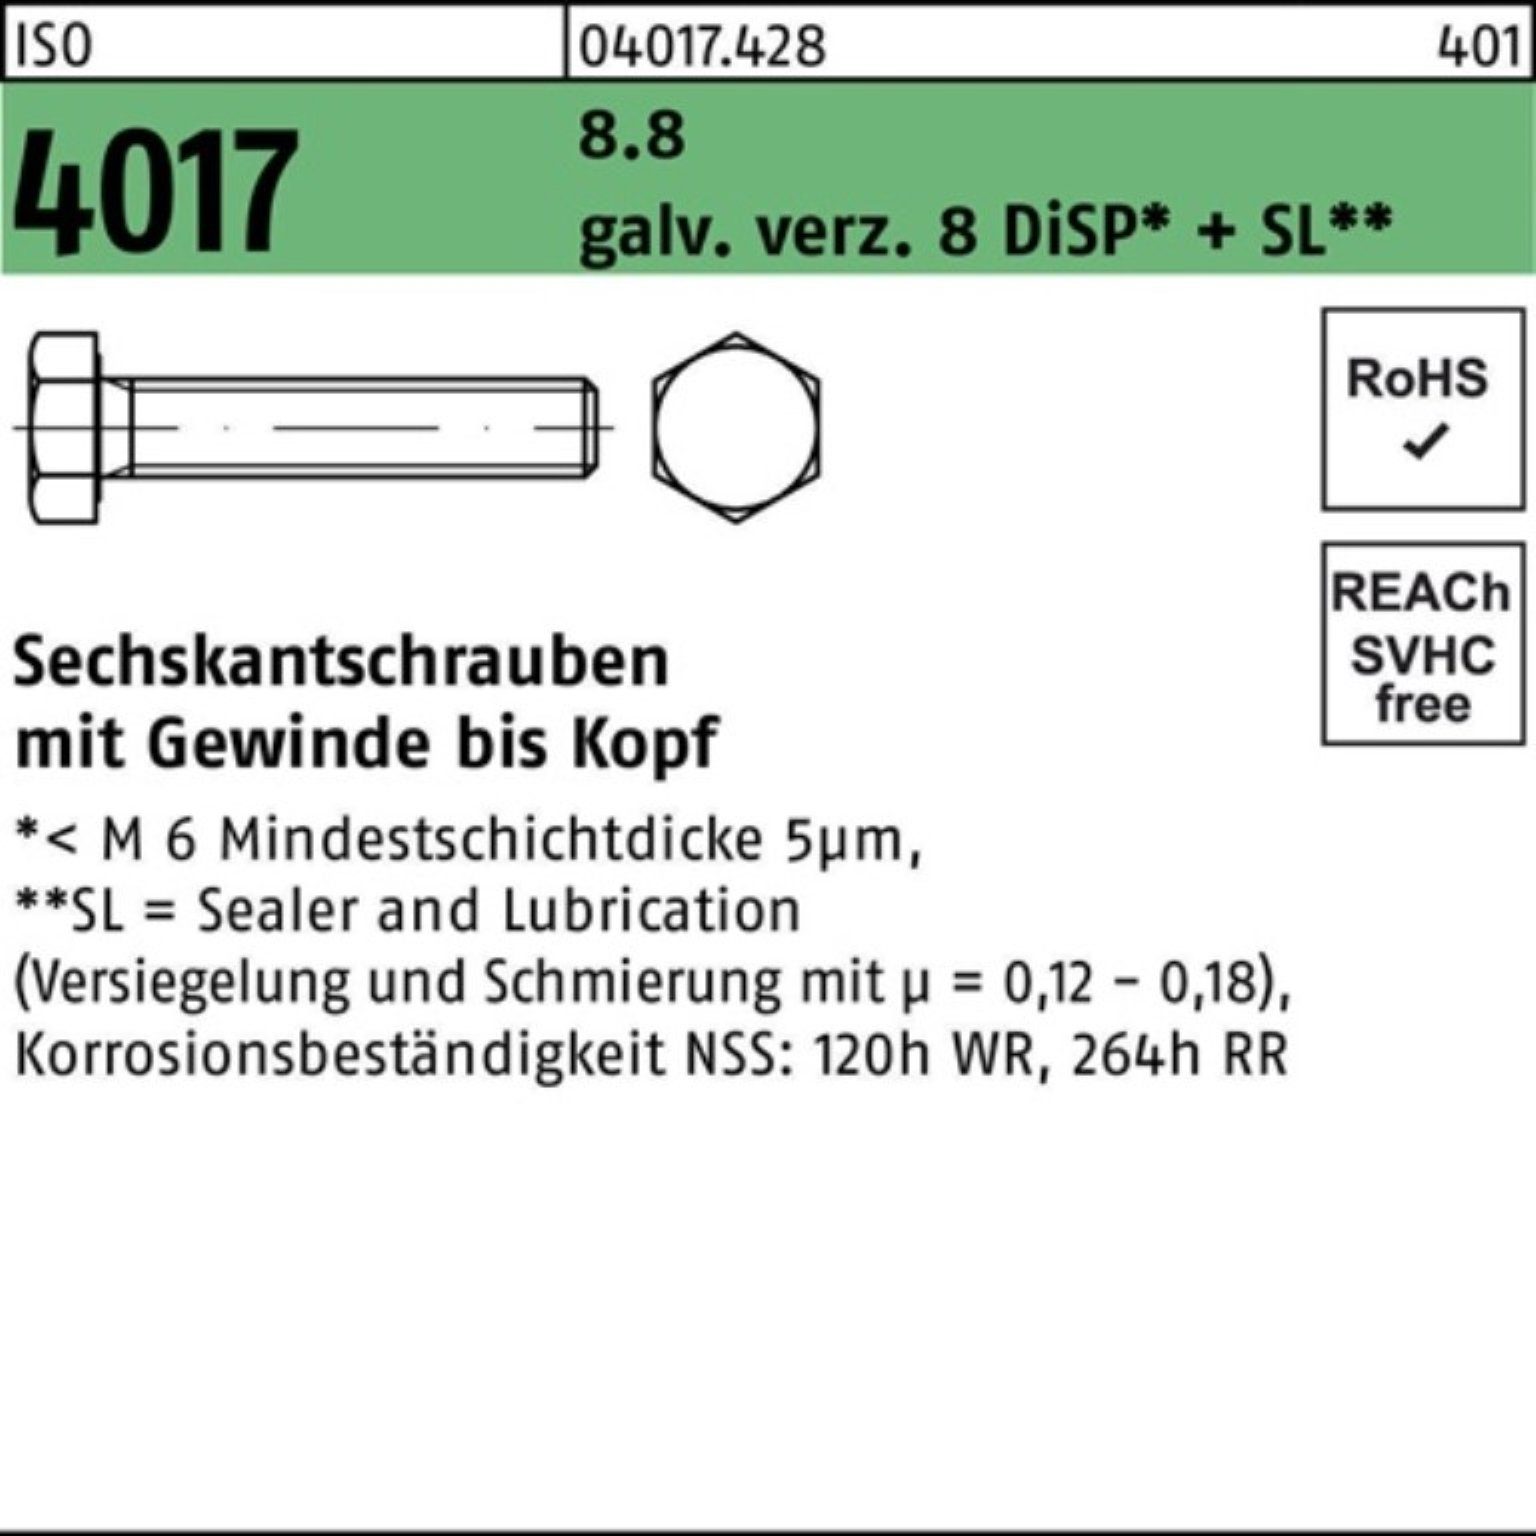 DiSP+ 4017 M6x 80 200er Sechskantschraube Bufab ISO 8.8 8 VG Pack Sechskantschraube galv.verz.